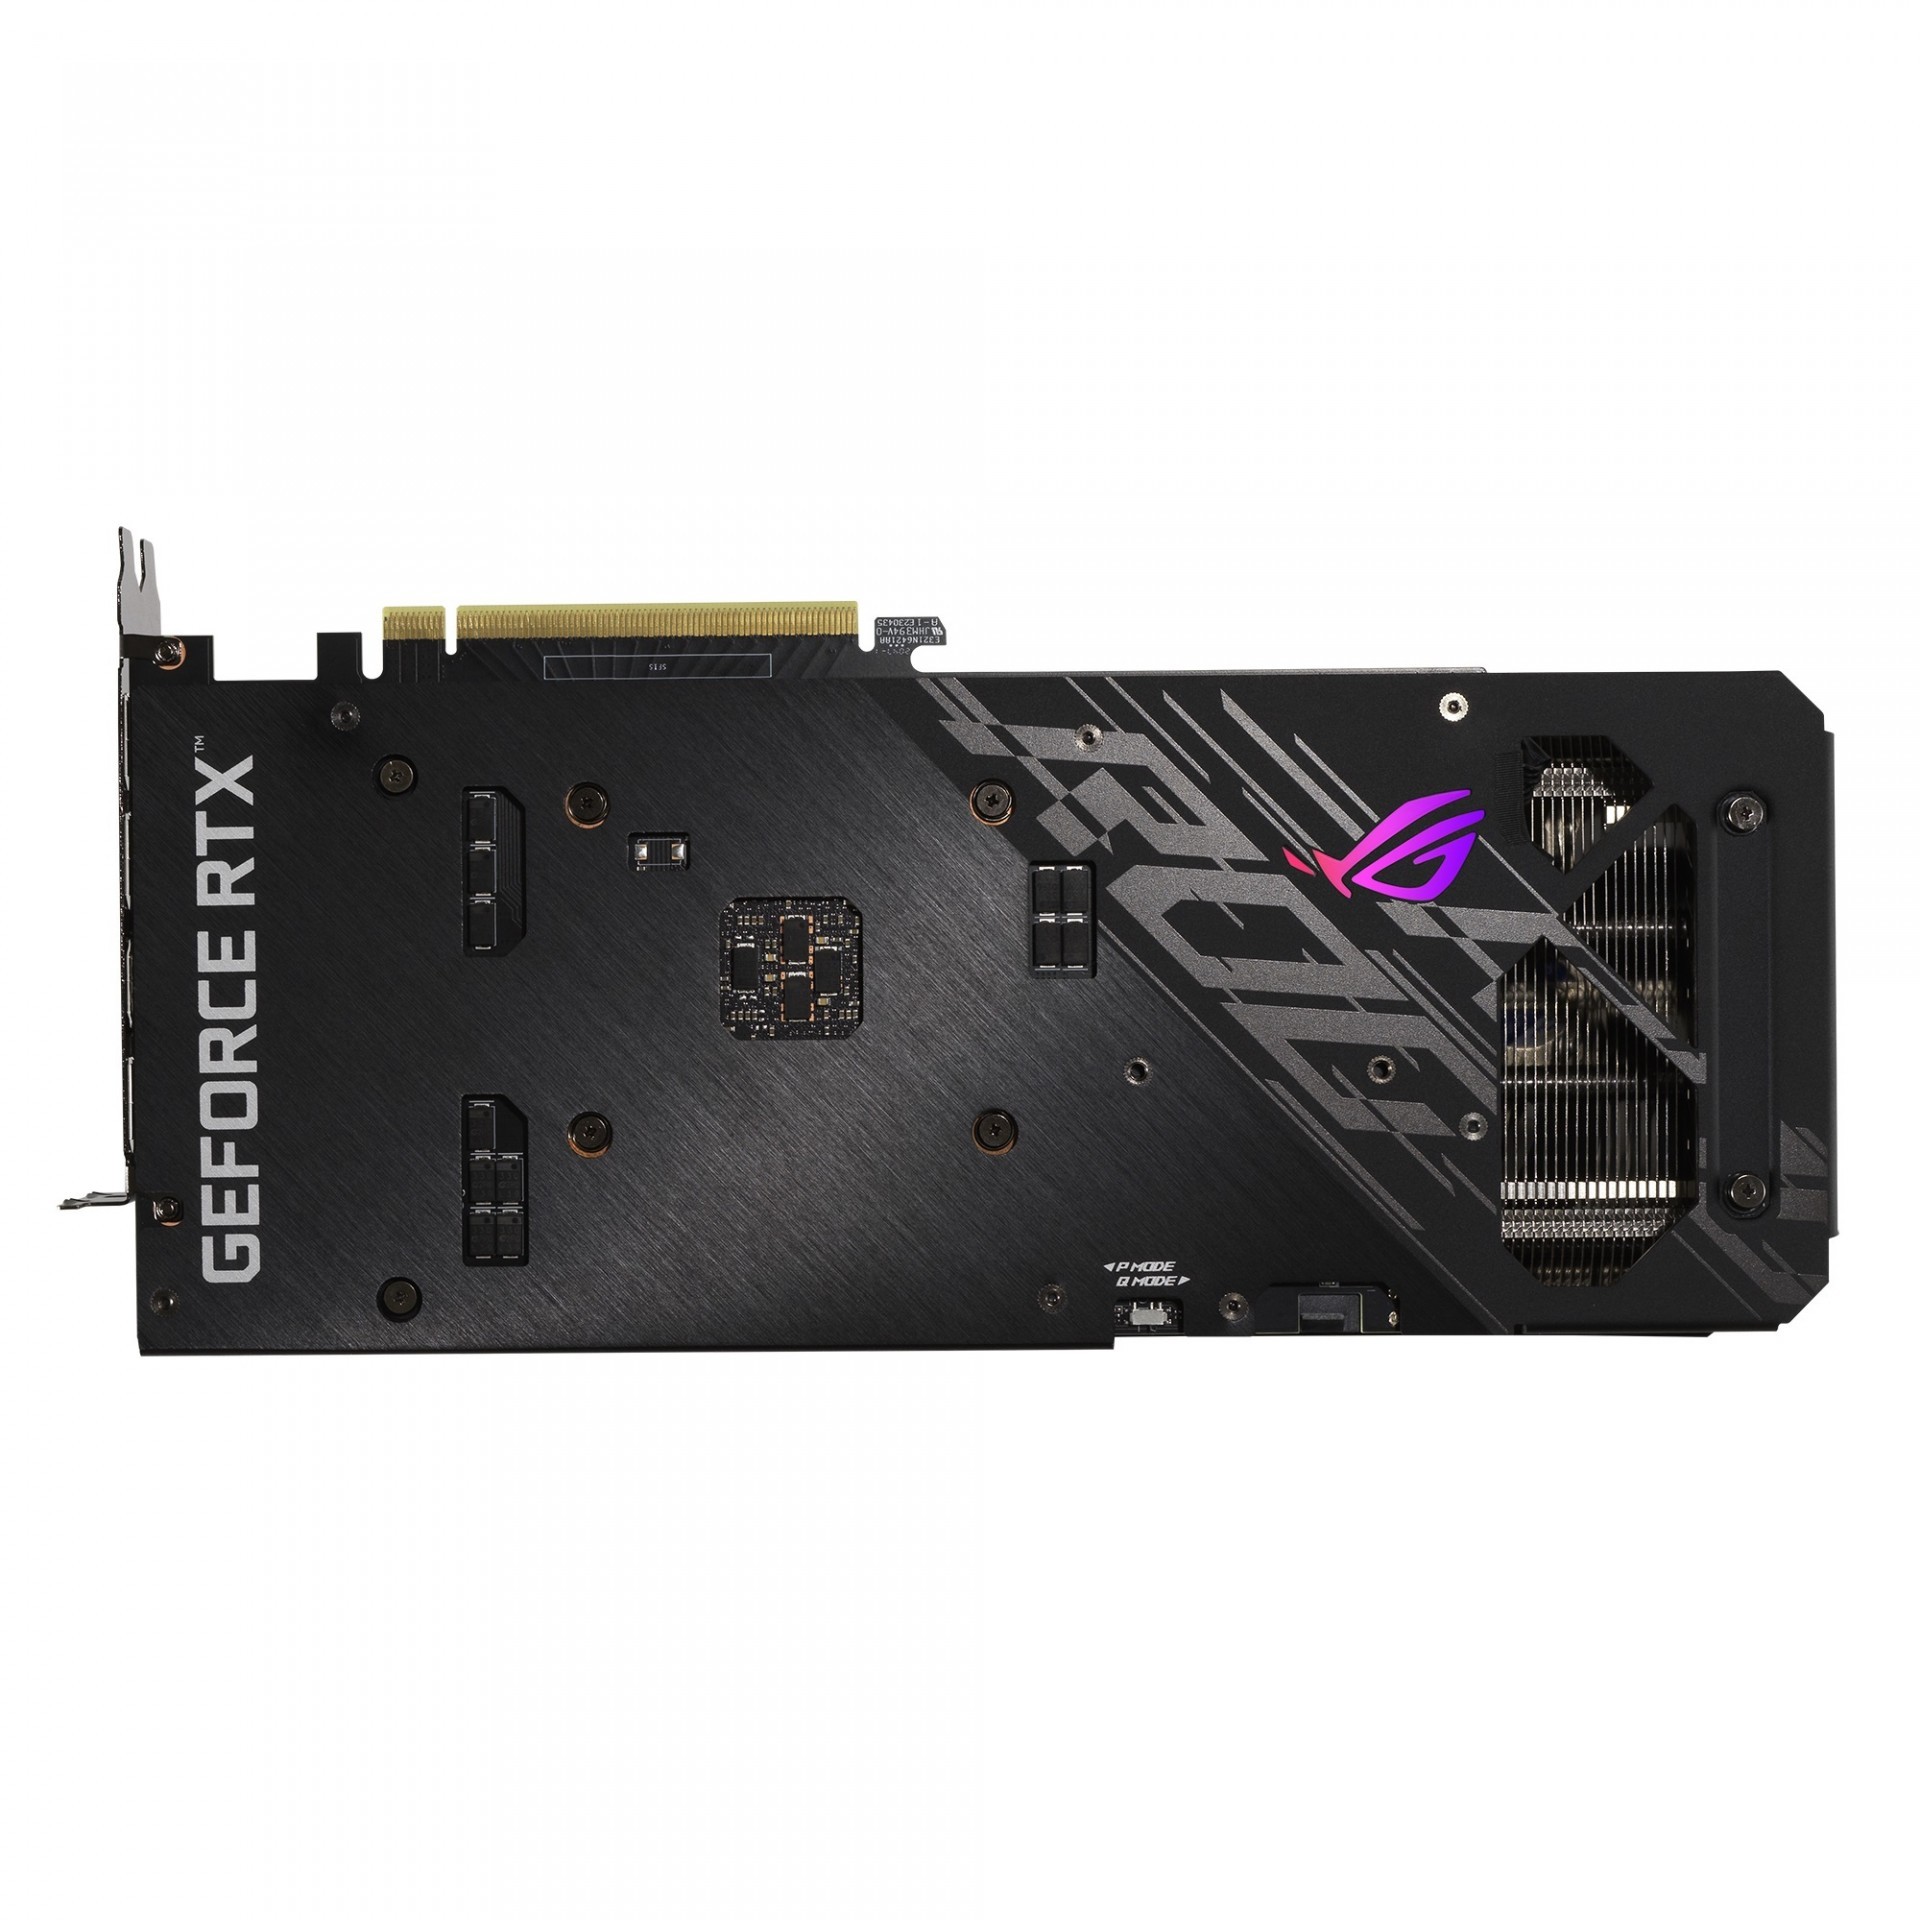 華碩推出 GeForce RTX 3060 12GB 系列顯示卡 採用 NVIDIA Ampere 架構及 12GB 記憶體